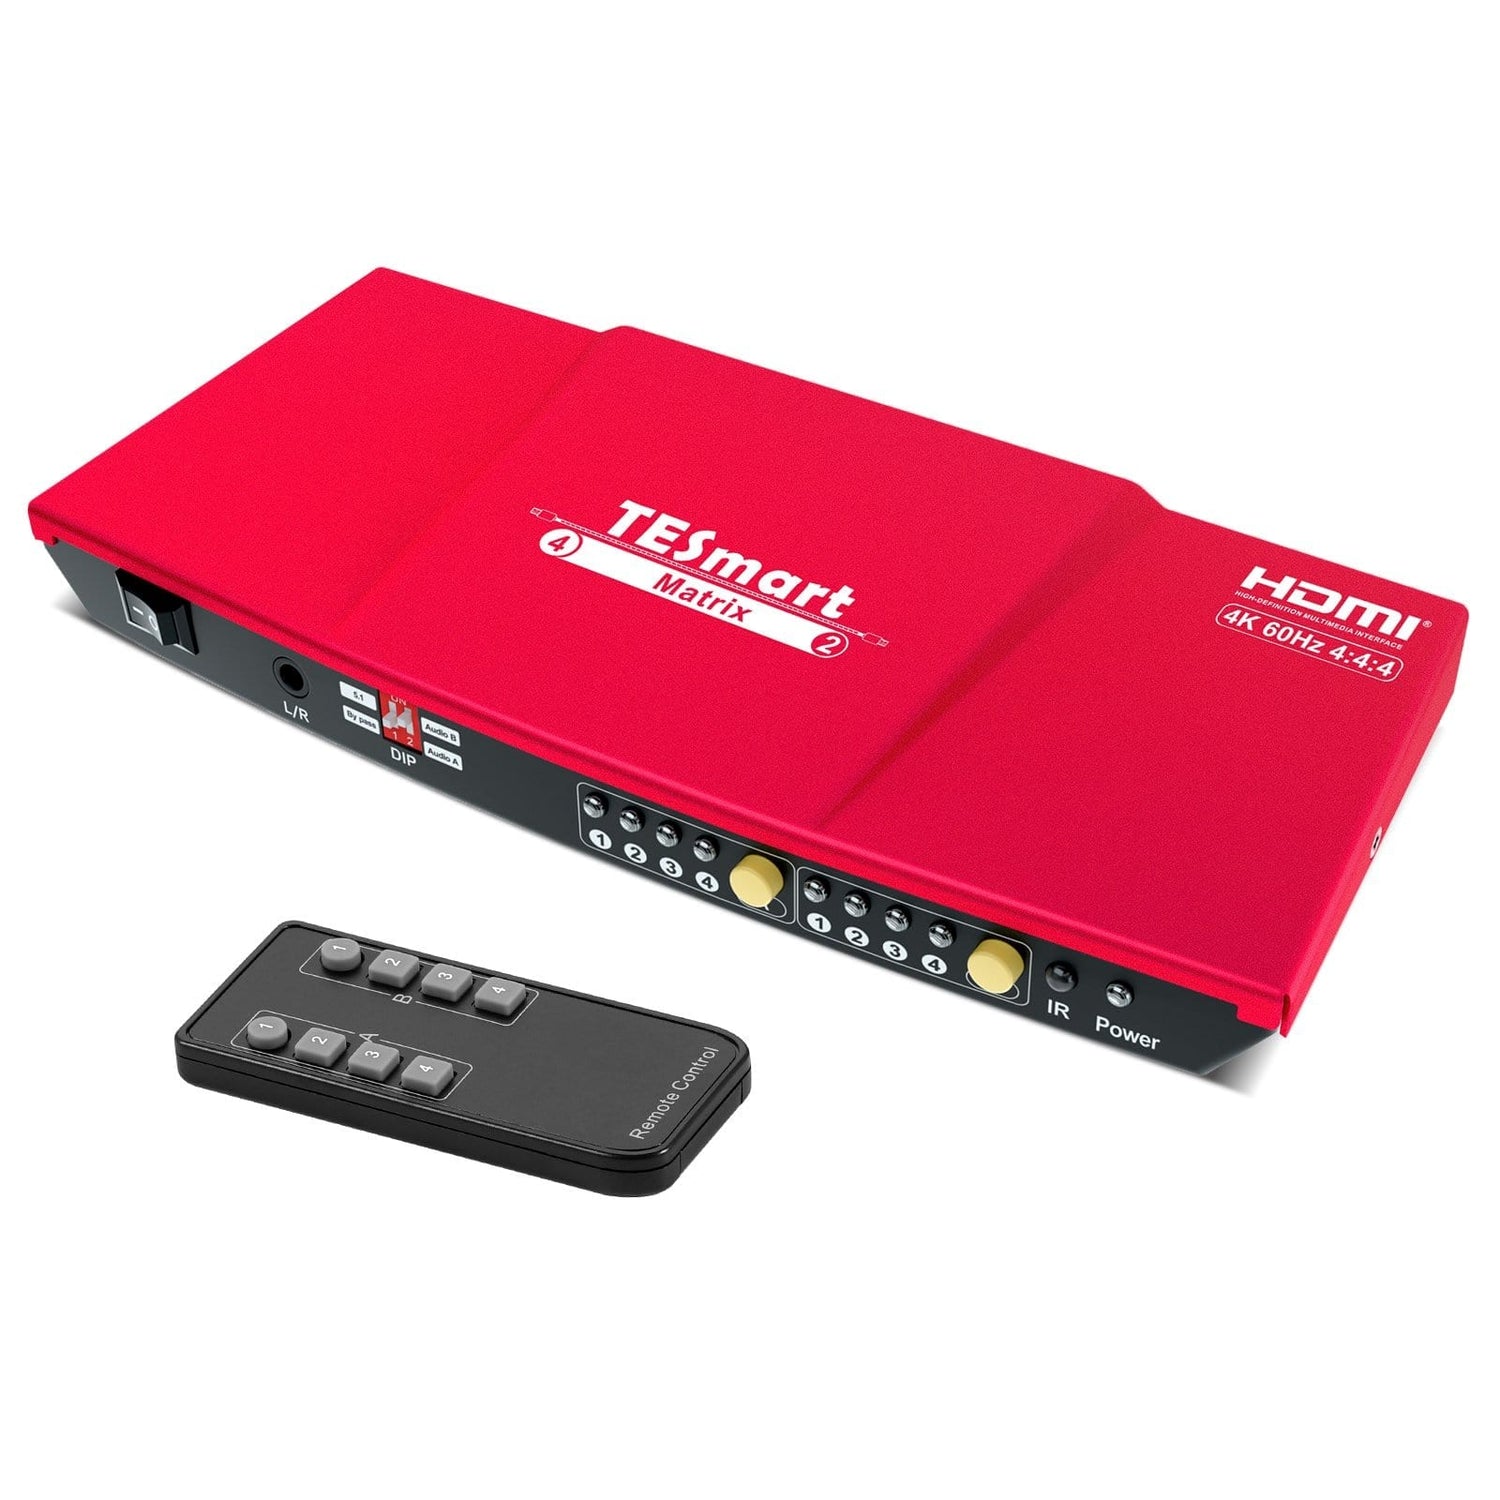 TESmart HMA0402A1U-USRD HDMI Matrix 4x2 4K HDMI-Matrix-Switch mit Audioextraktion und Audioausgang 4x2 HDMI Matrix Video Switch 4K 60hz HDCP mit  Audio TESmart US Plug / Red